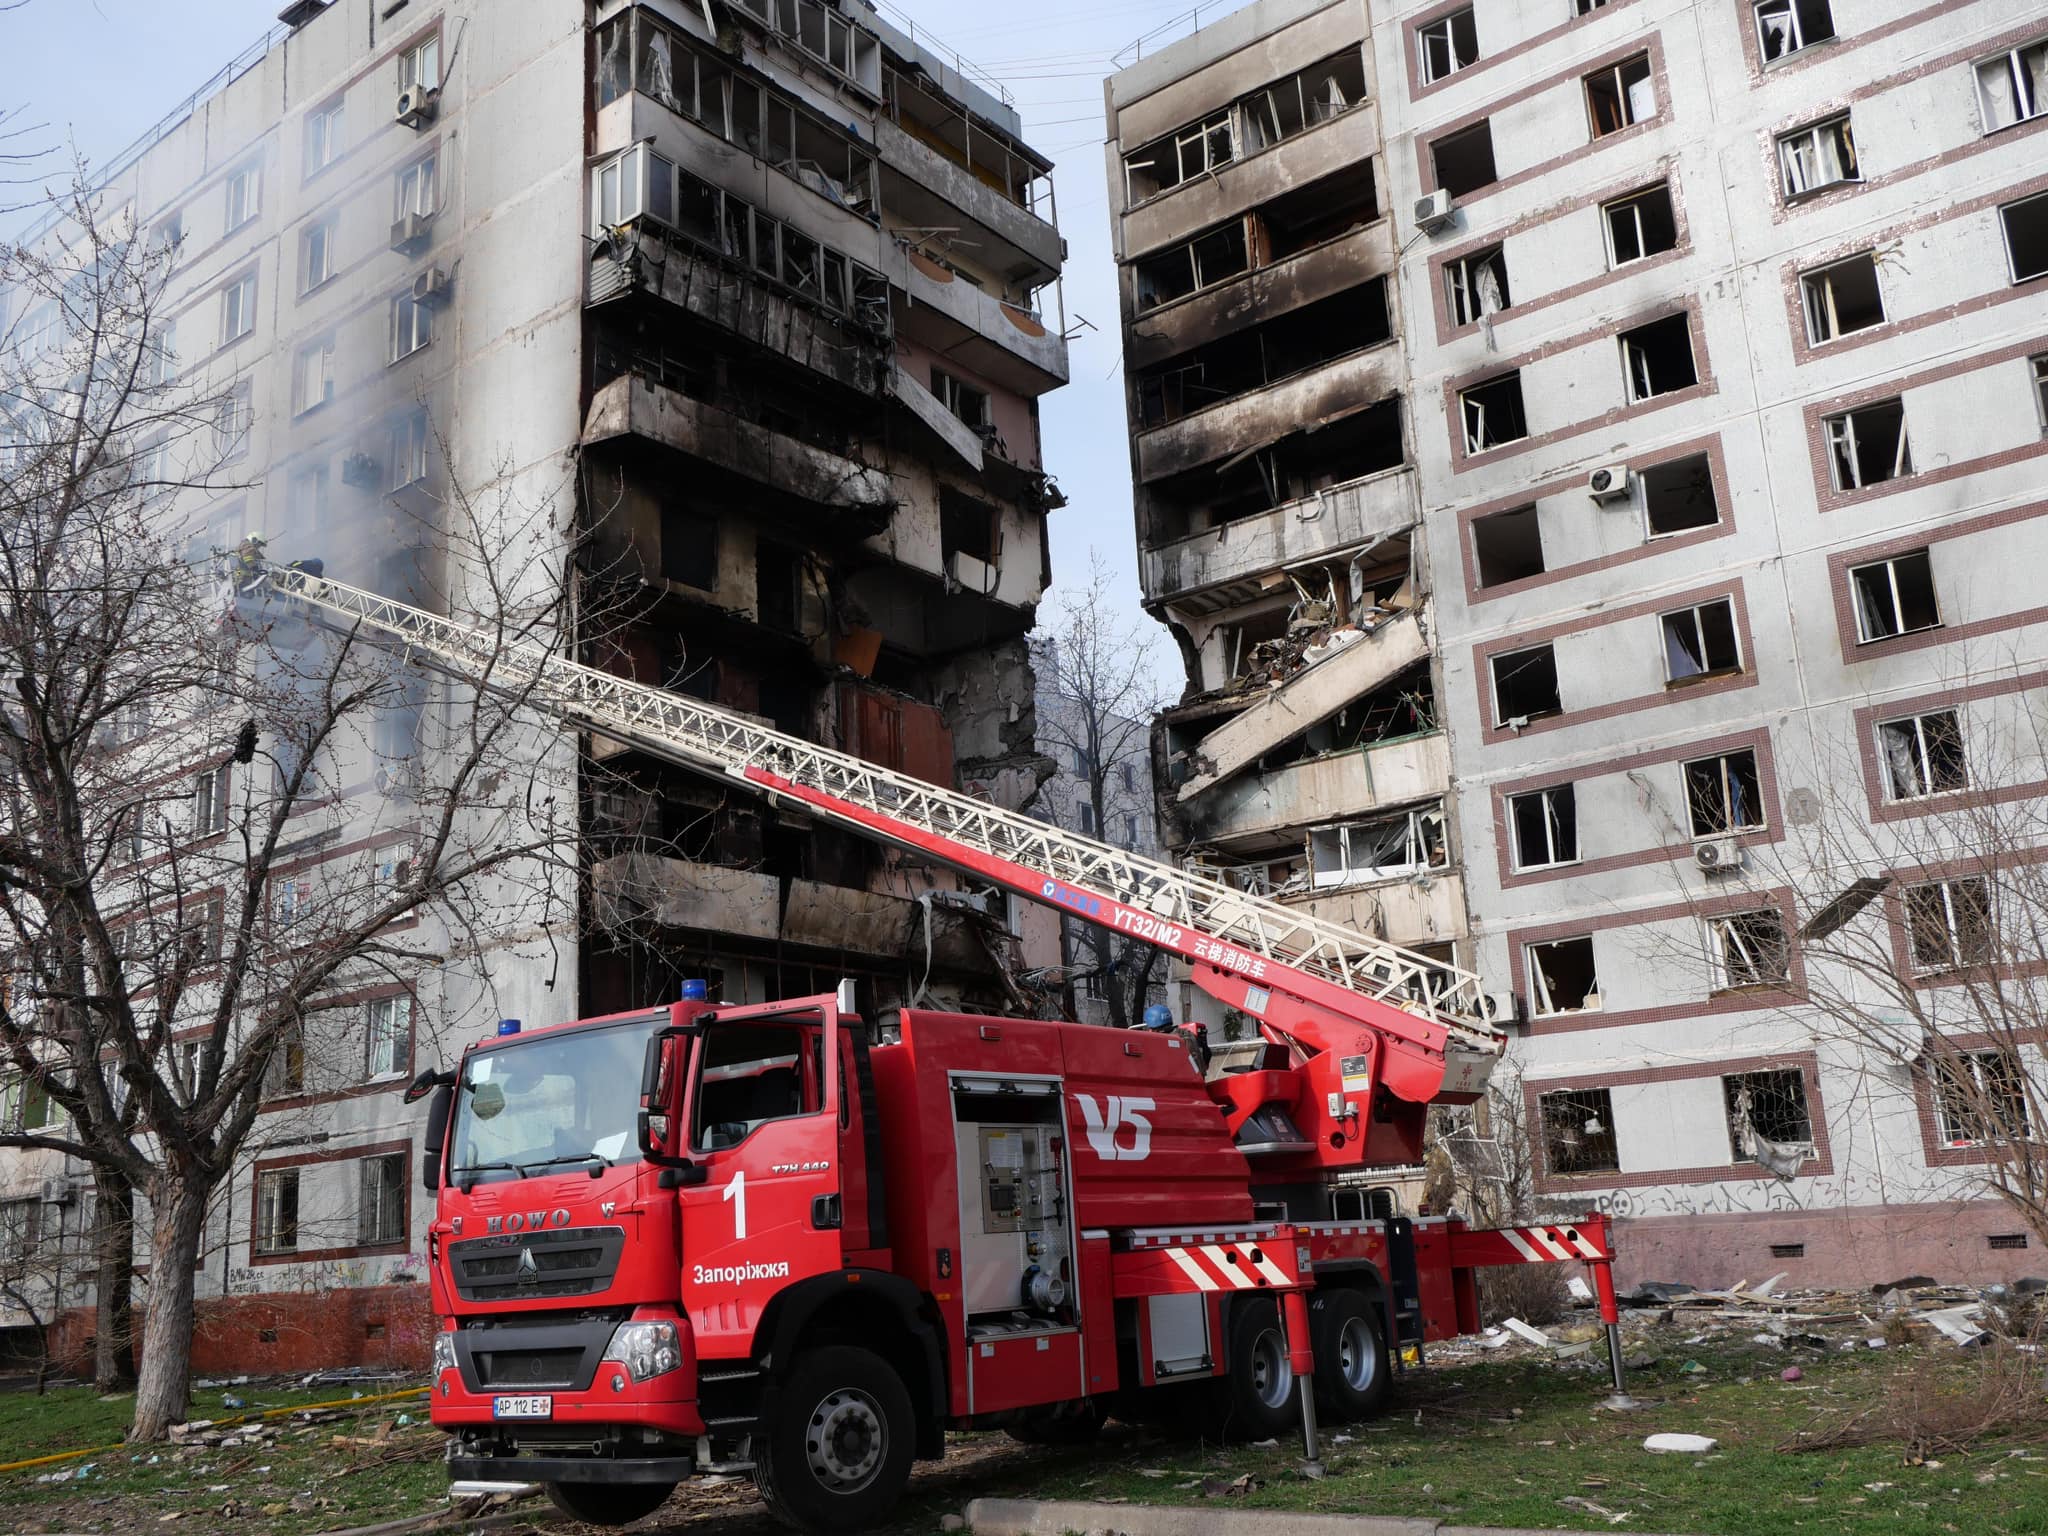 Рятувальна операція в Запоріжжі завершена: від російської атаки загалом 34 людини постраждали, з них троє дітей, одна людина померла (ФОТО) 6